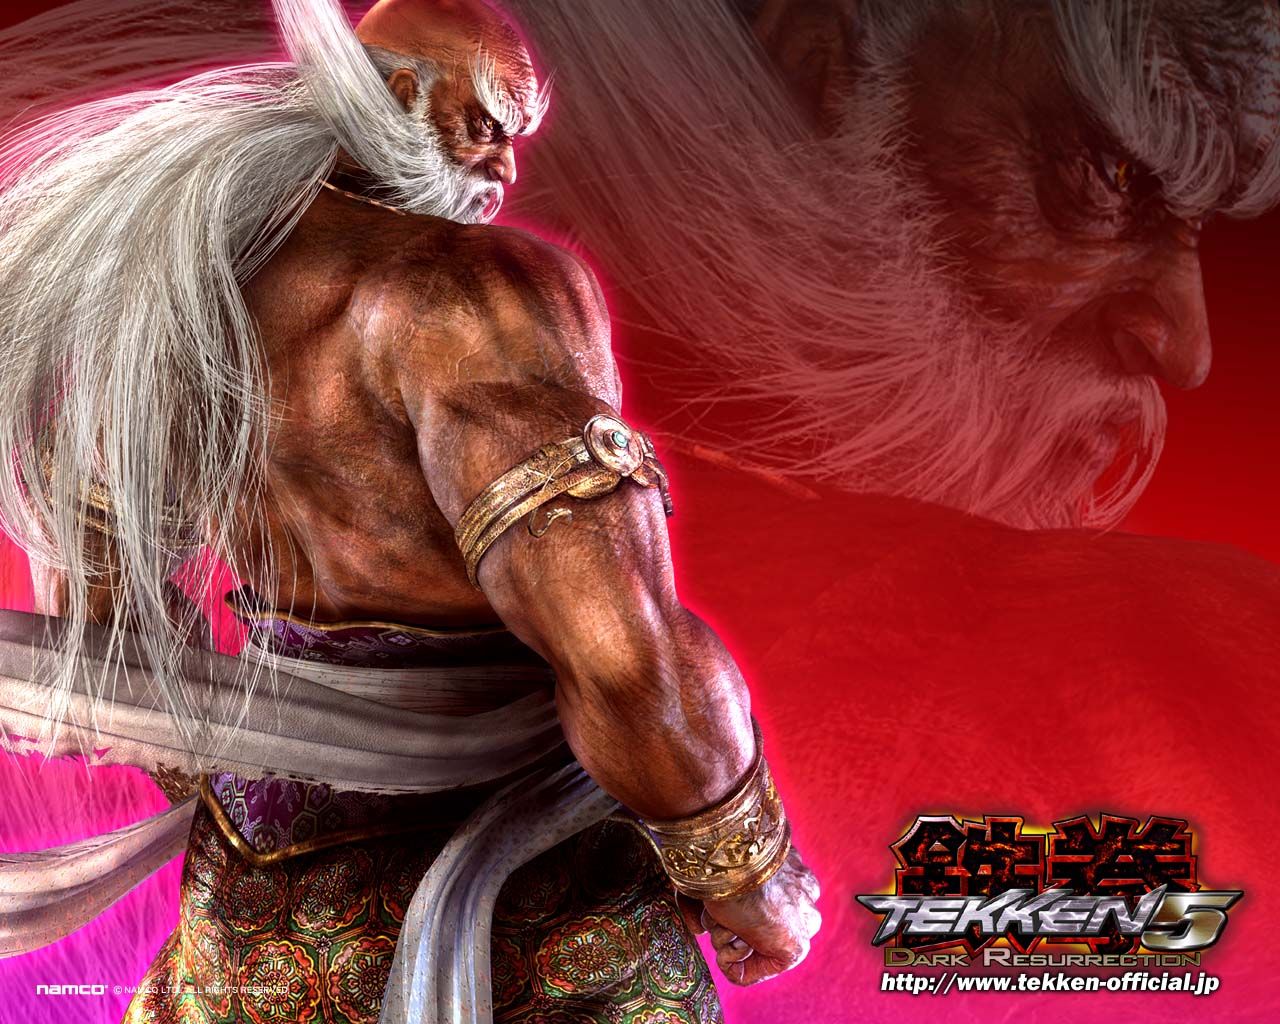 Tekken: Dark Resurrection screenshots, images and pictures - Giant ...